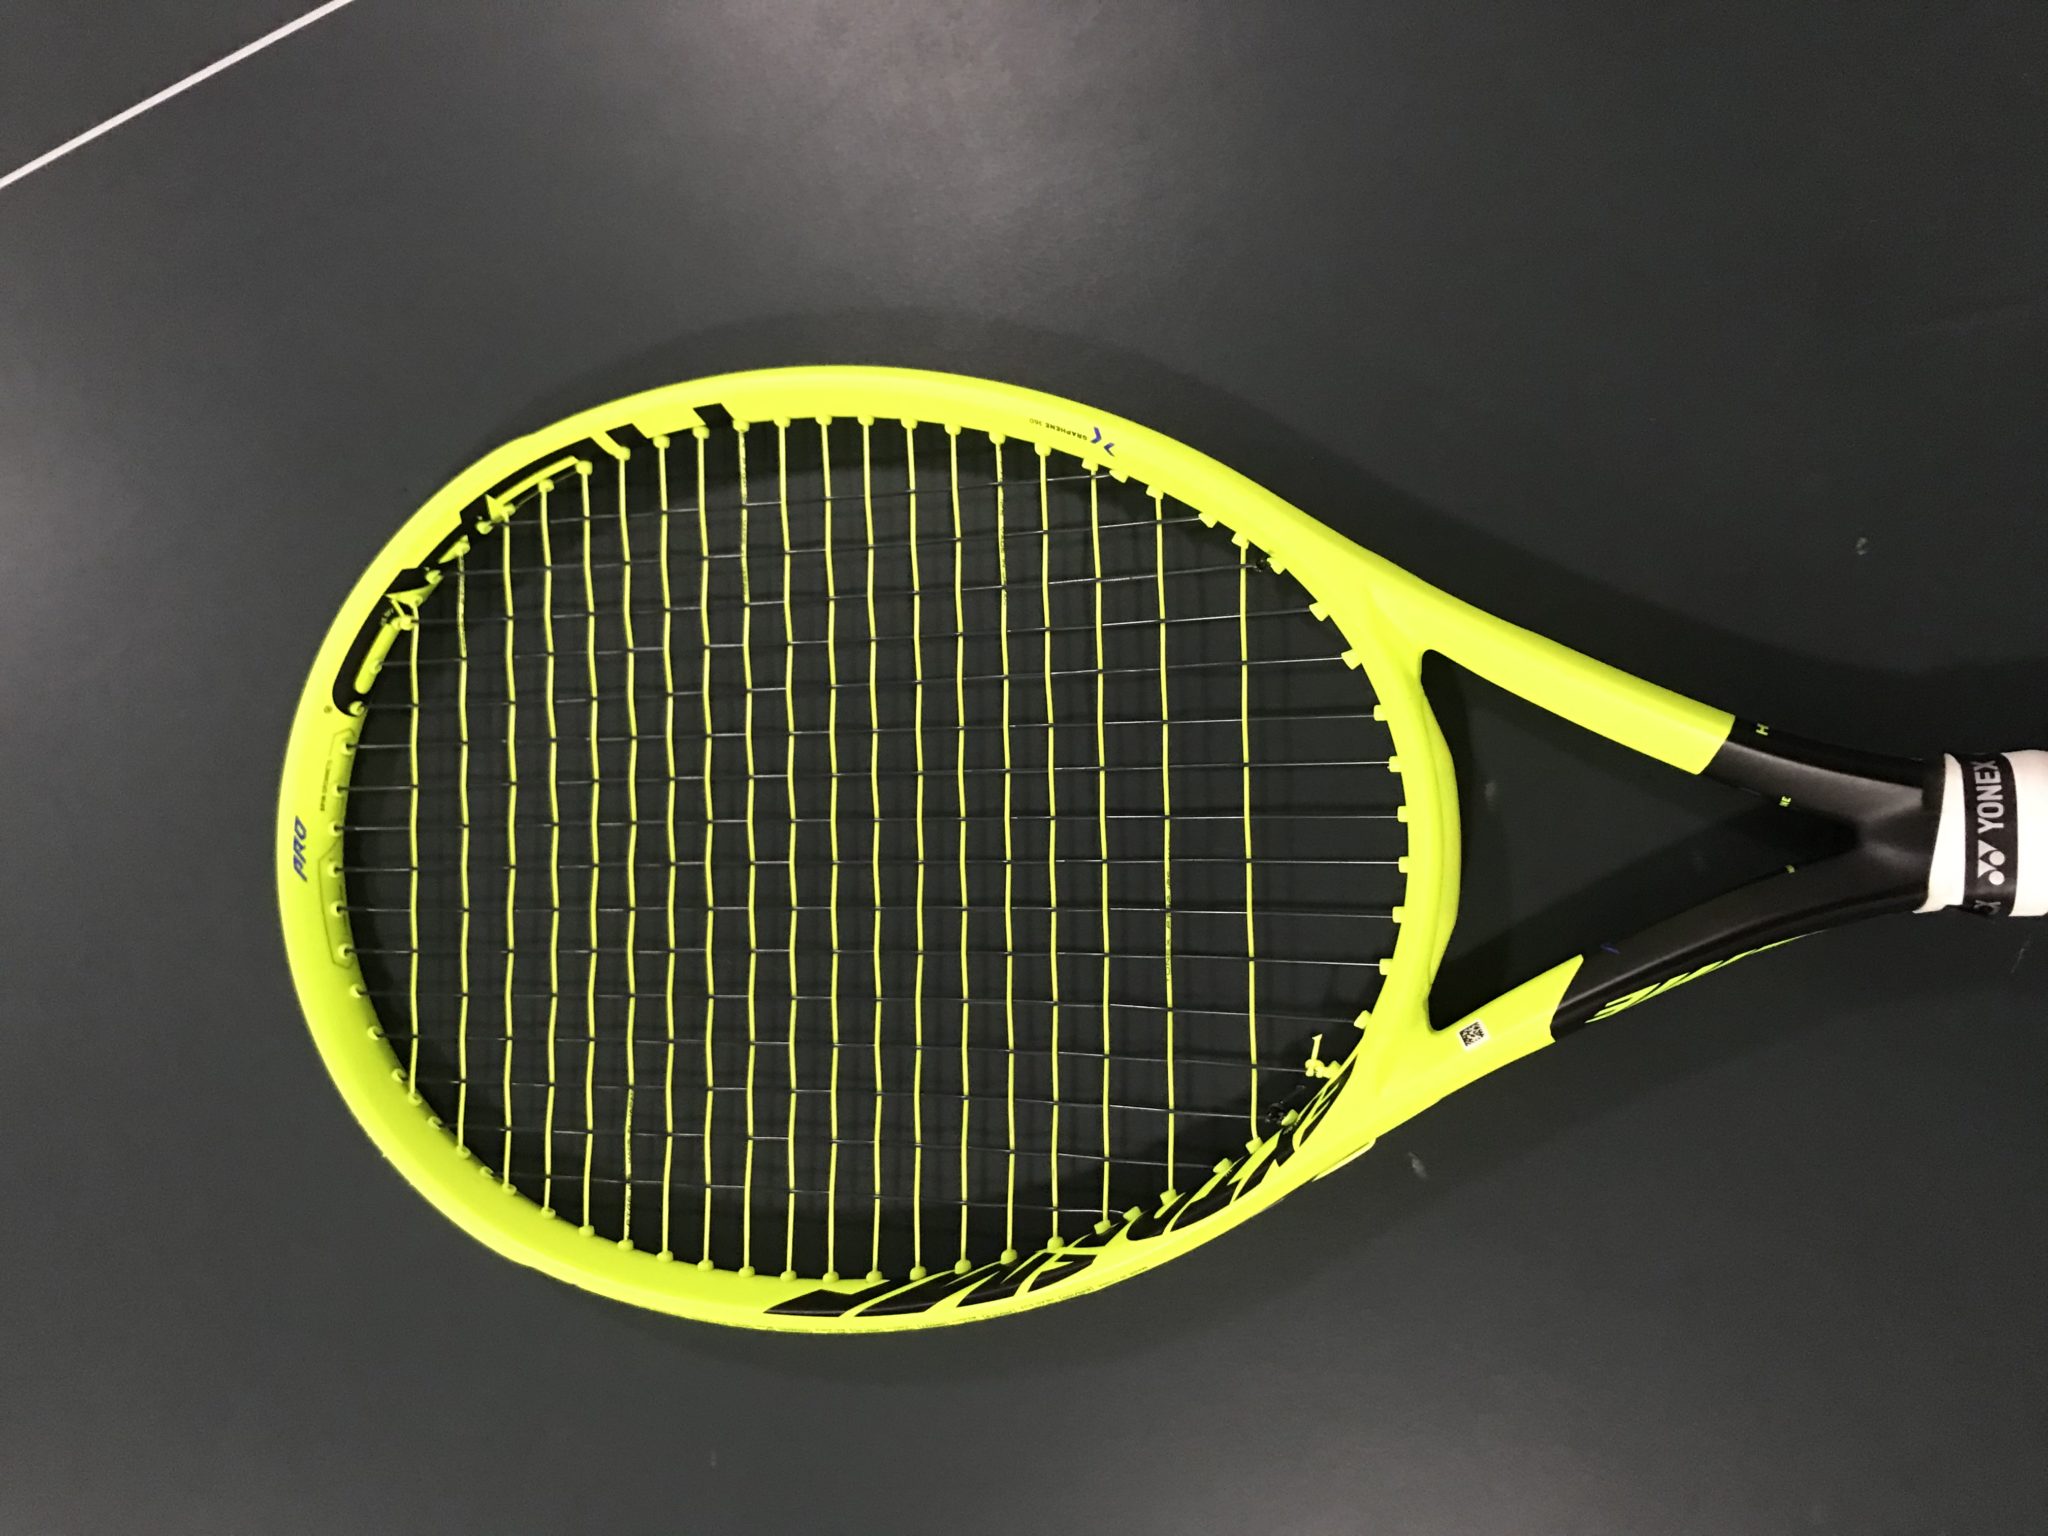 The Gear of the Year 2018 - Tennisnerd reviews tennis racquets 